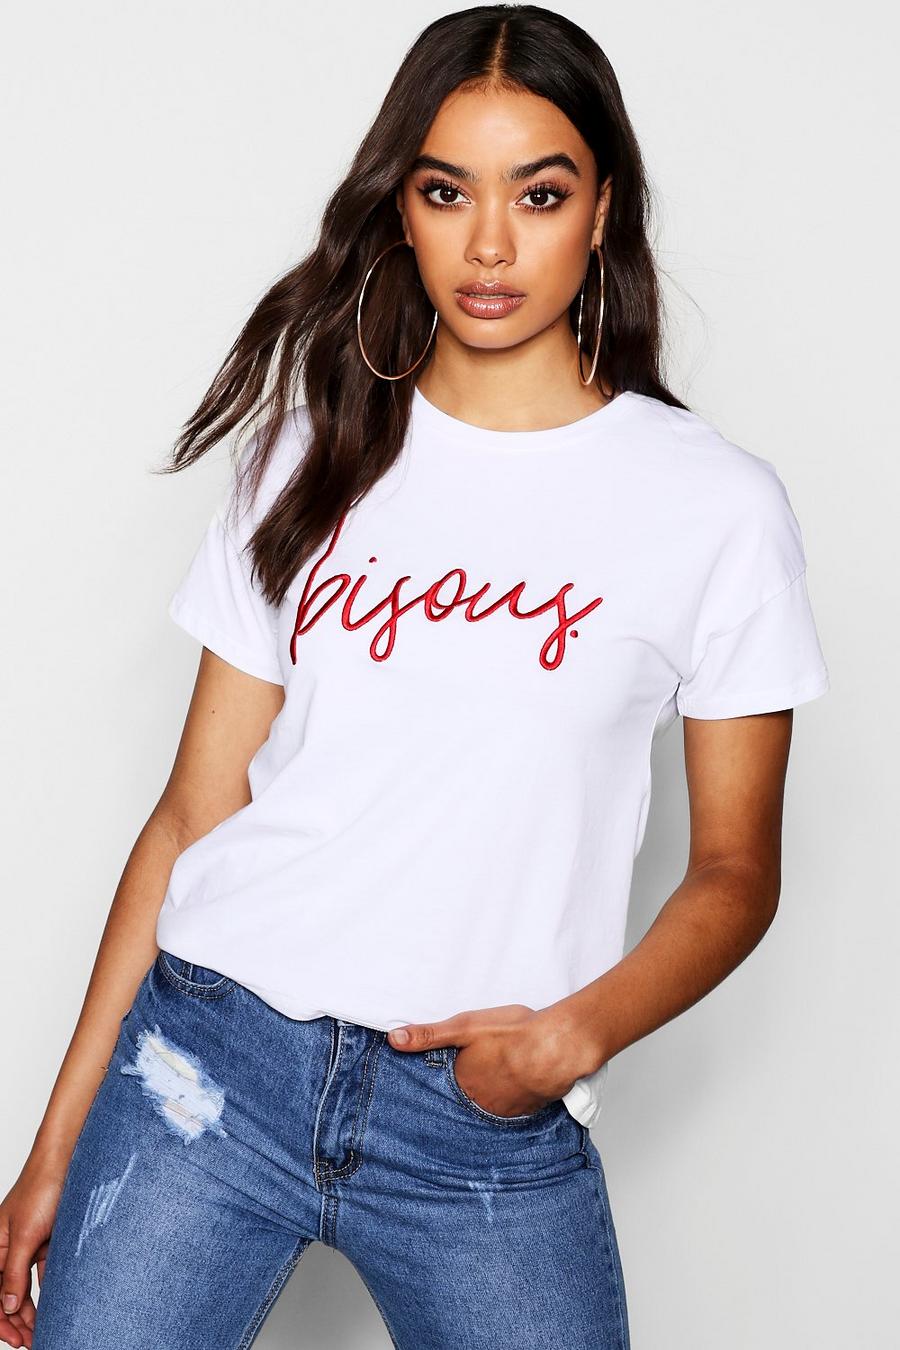 Camiseta con bordados y eslogan en francés “Bisous” image number 1